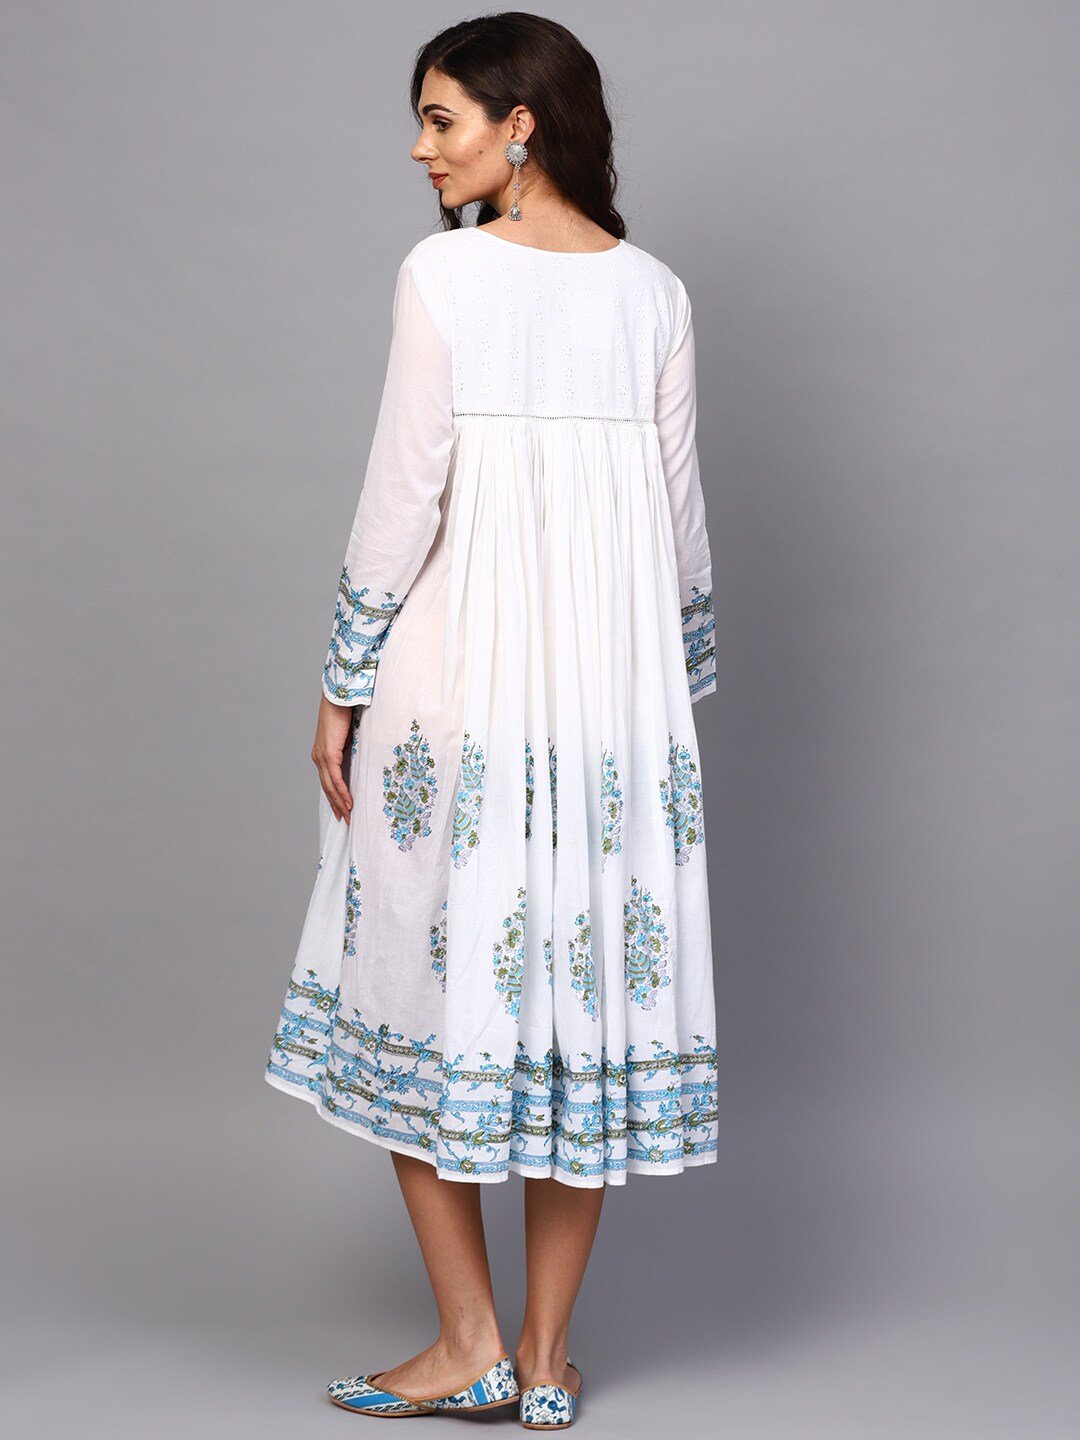 Women's  White & Blue Printed A-Line Dress - AKS